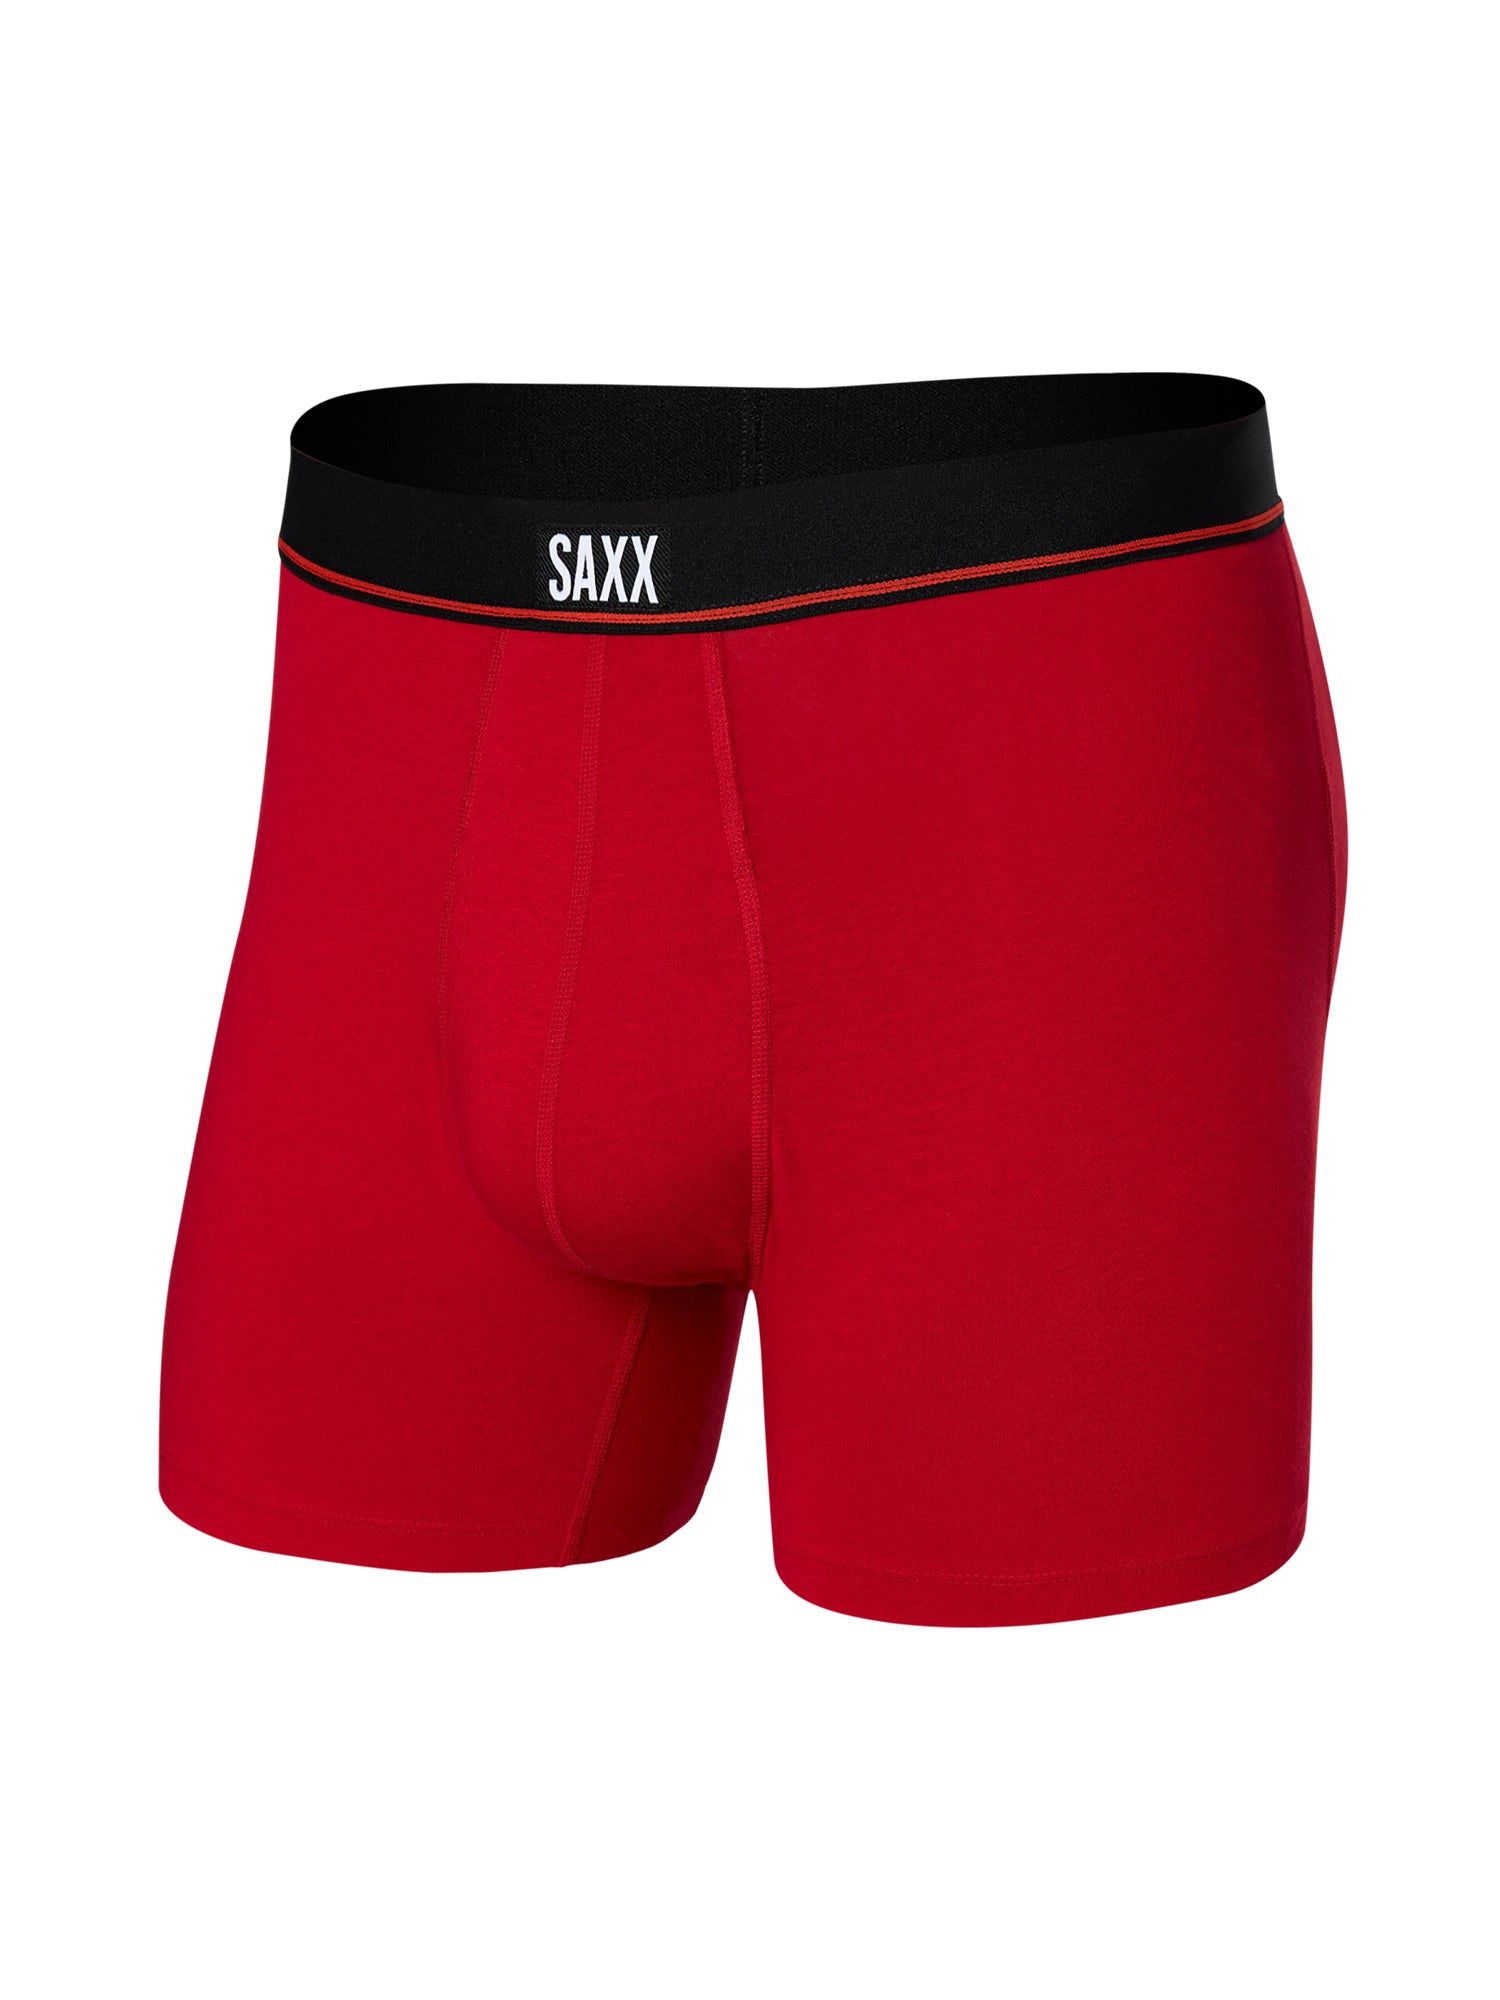 Saxx - Boxeur - Vibe Imprimé XL